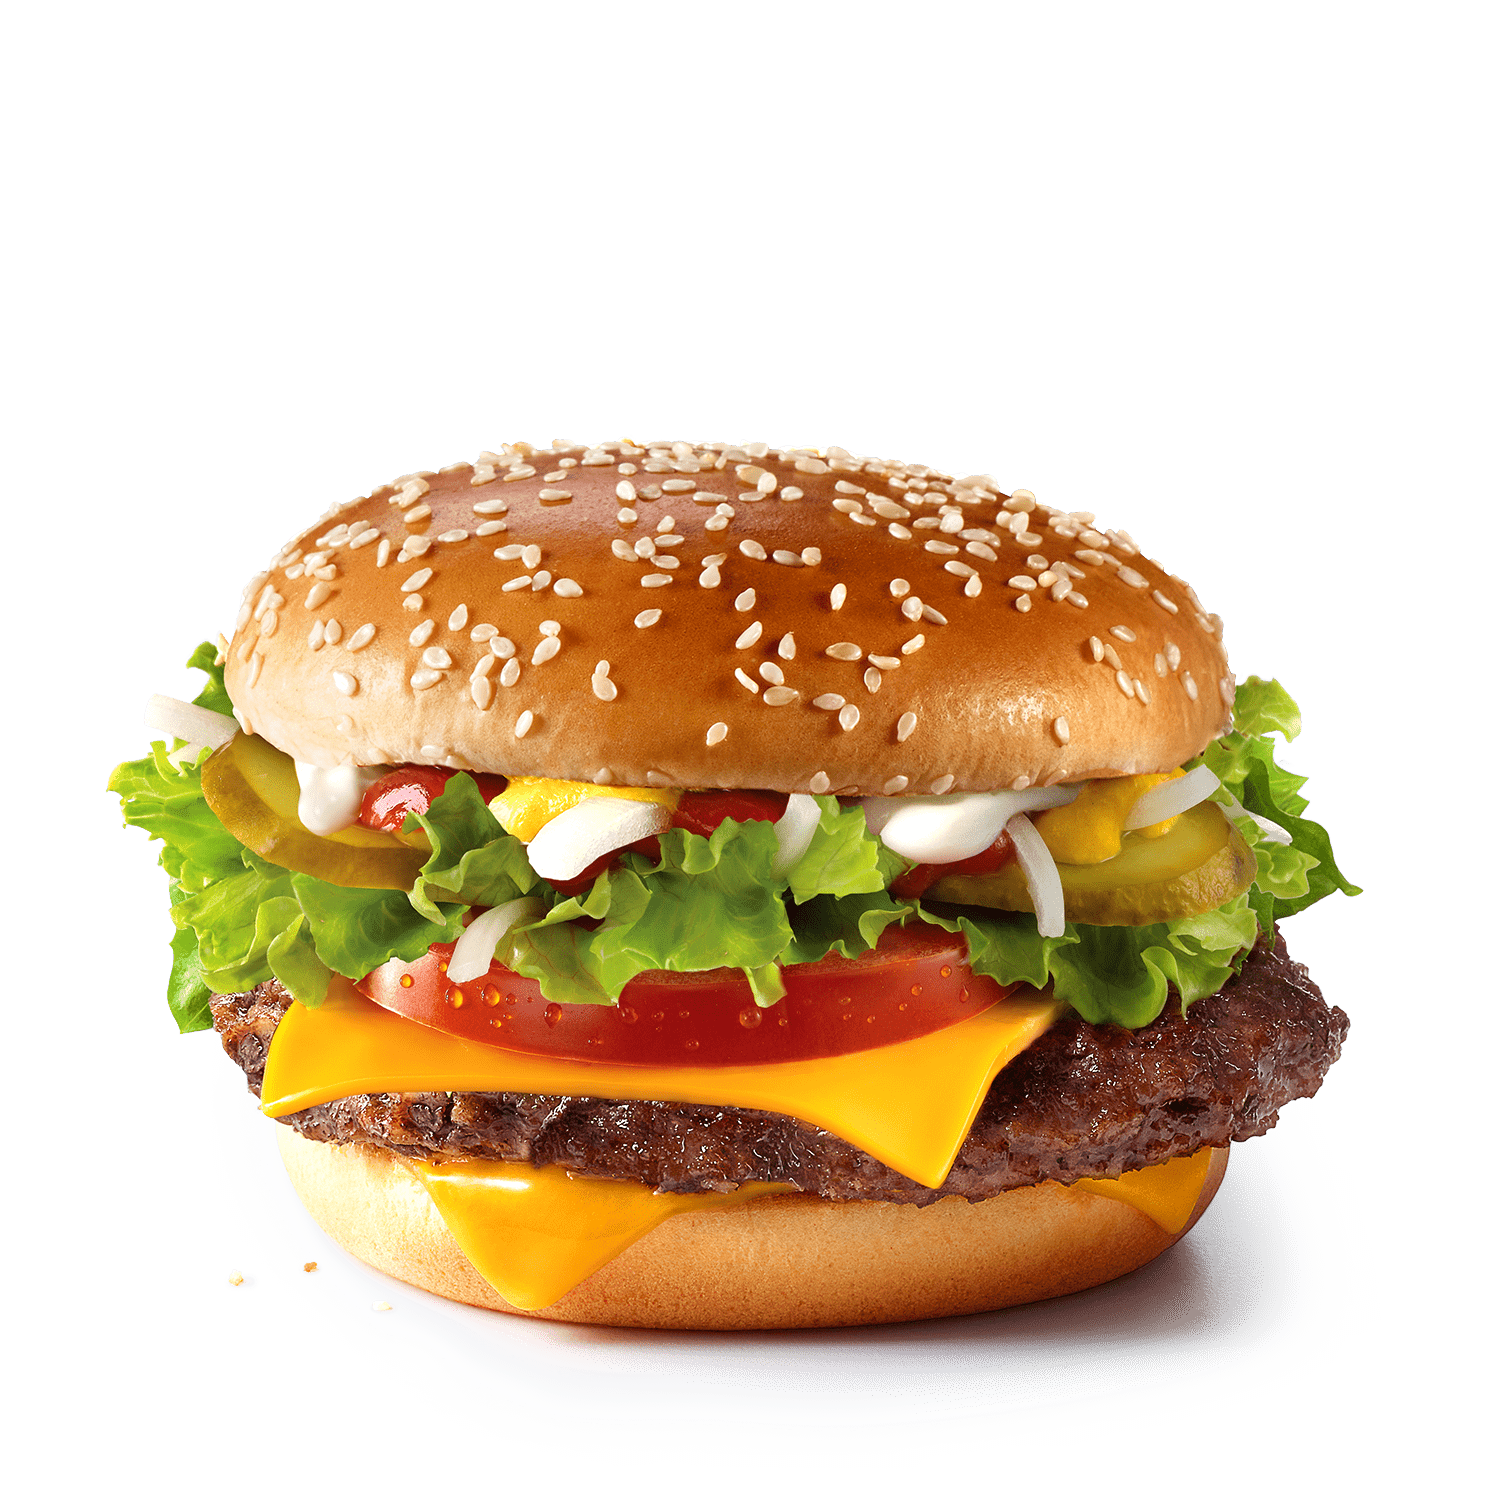 Котлета для гамбургера - пошаговый рецепт с фото на фотодетки.рф